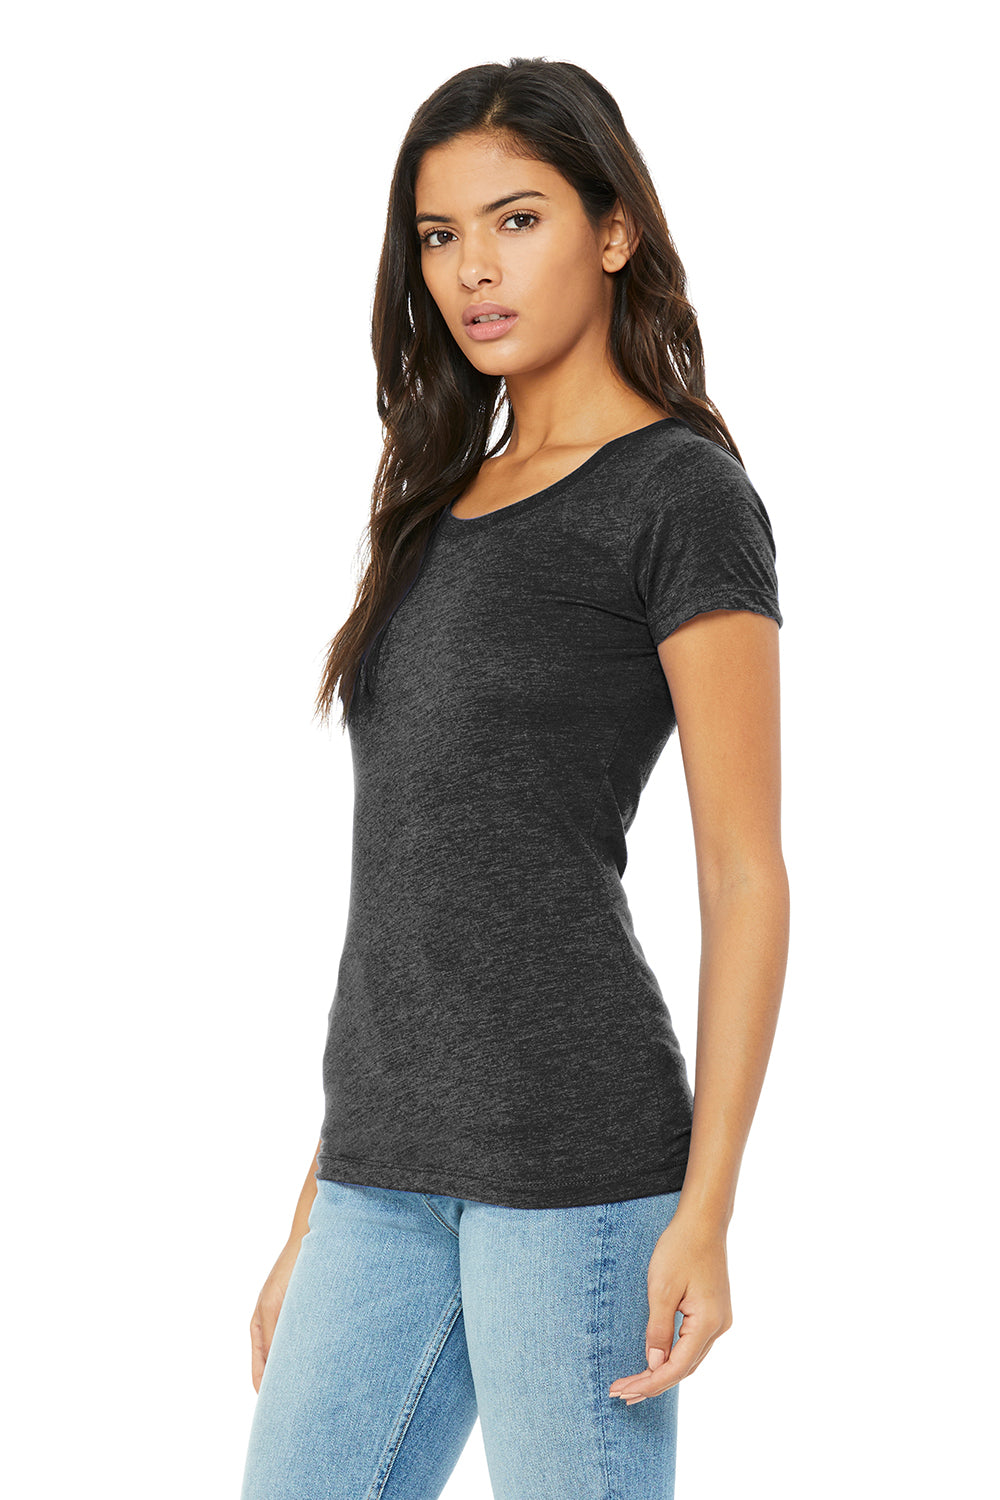 Bella + Canvas BC8413/B8413/8413 Womens Short Sleeve Crewneck T-Shirt Charcoal Black Model 3Q